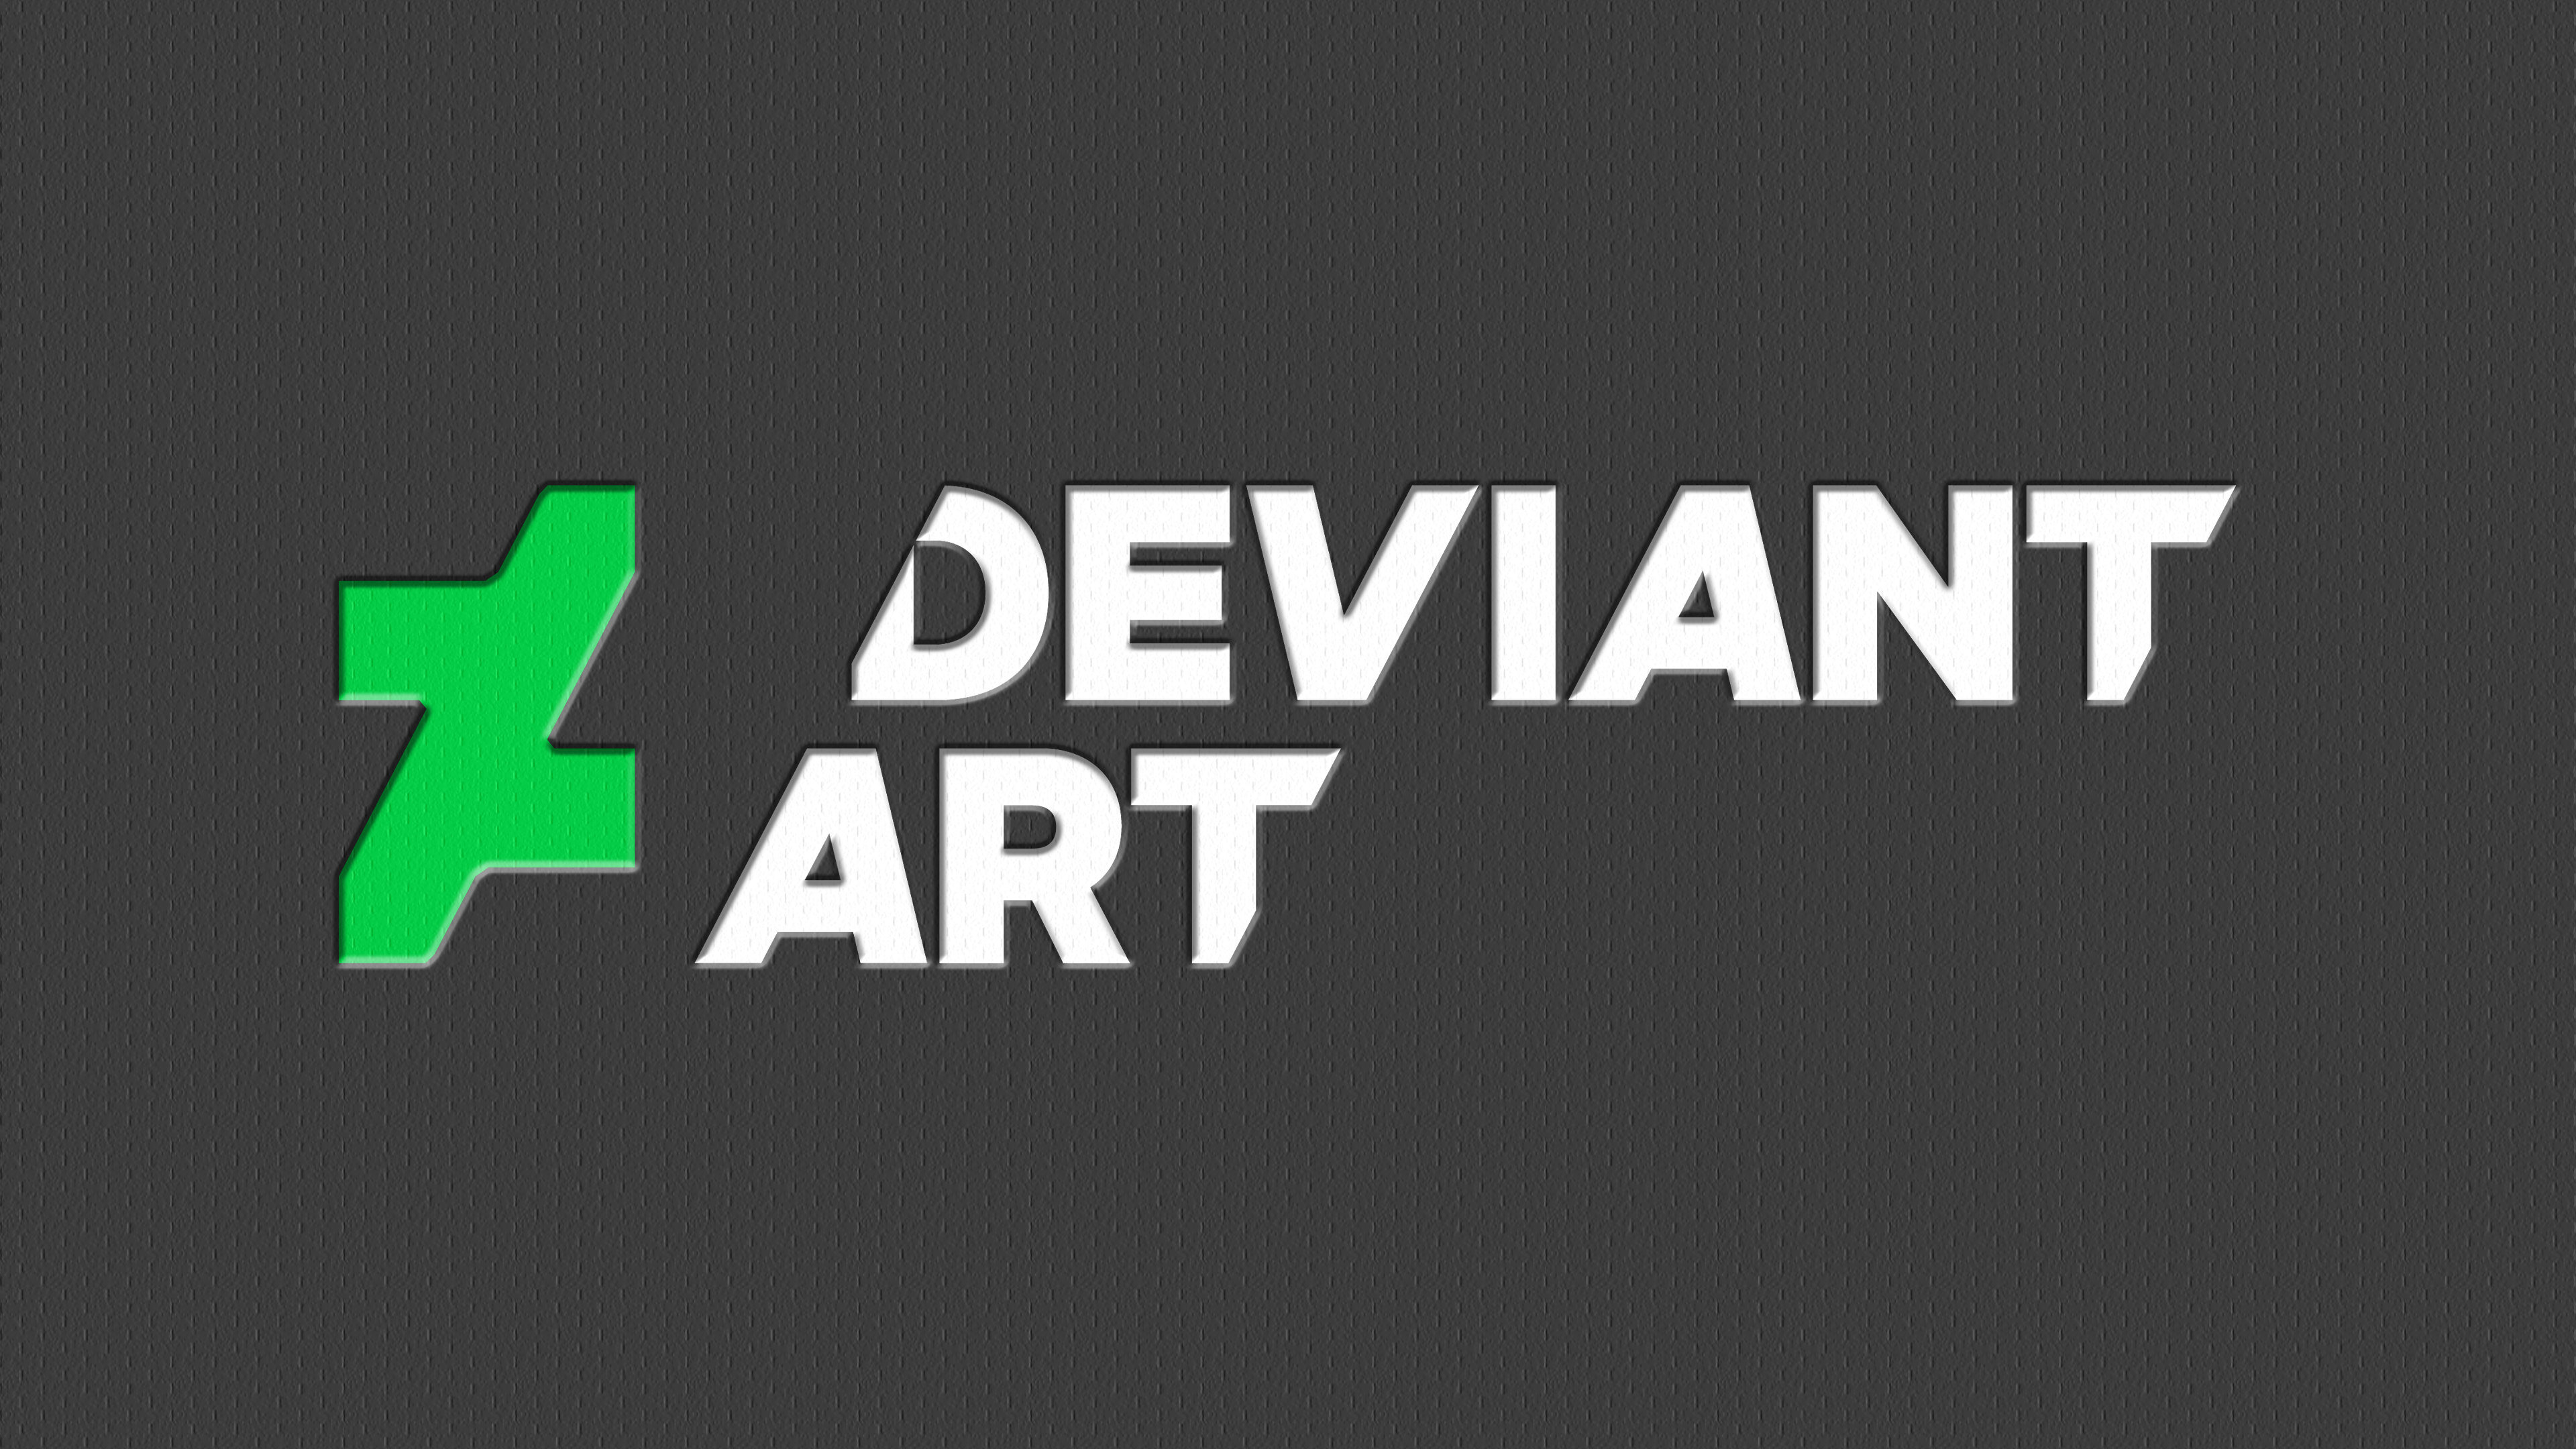 Elite Graphic Design VL Logo V2 by QuestLog on DeviantArt